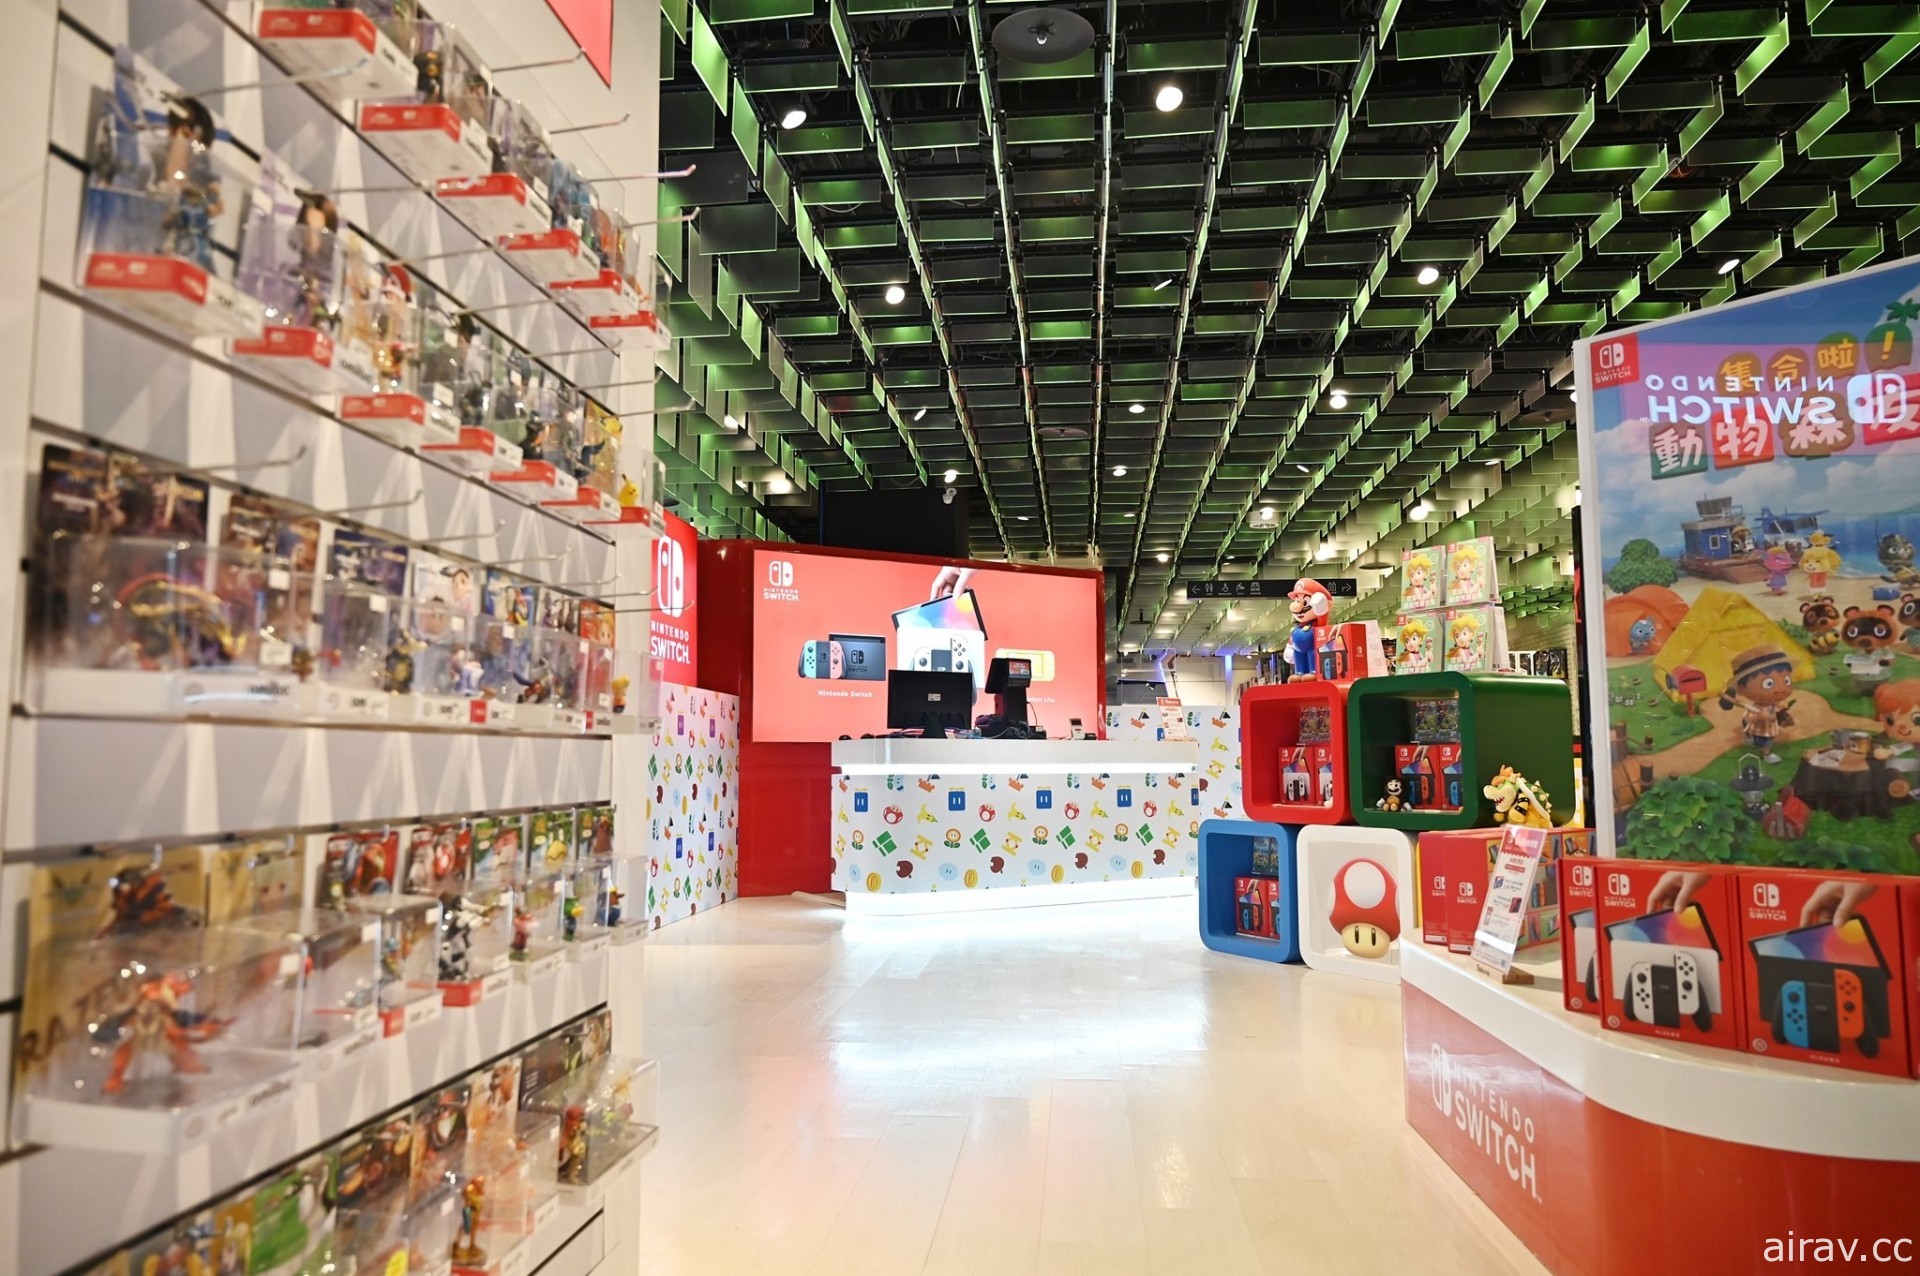 Game 休閒館「任天堂電玩商品旗艦館」於三創開幕 同步設置寶可夢快閃店